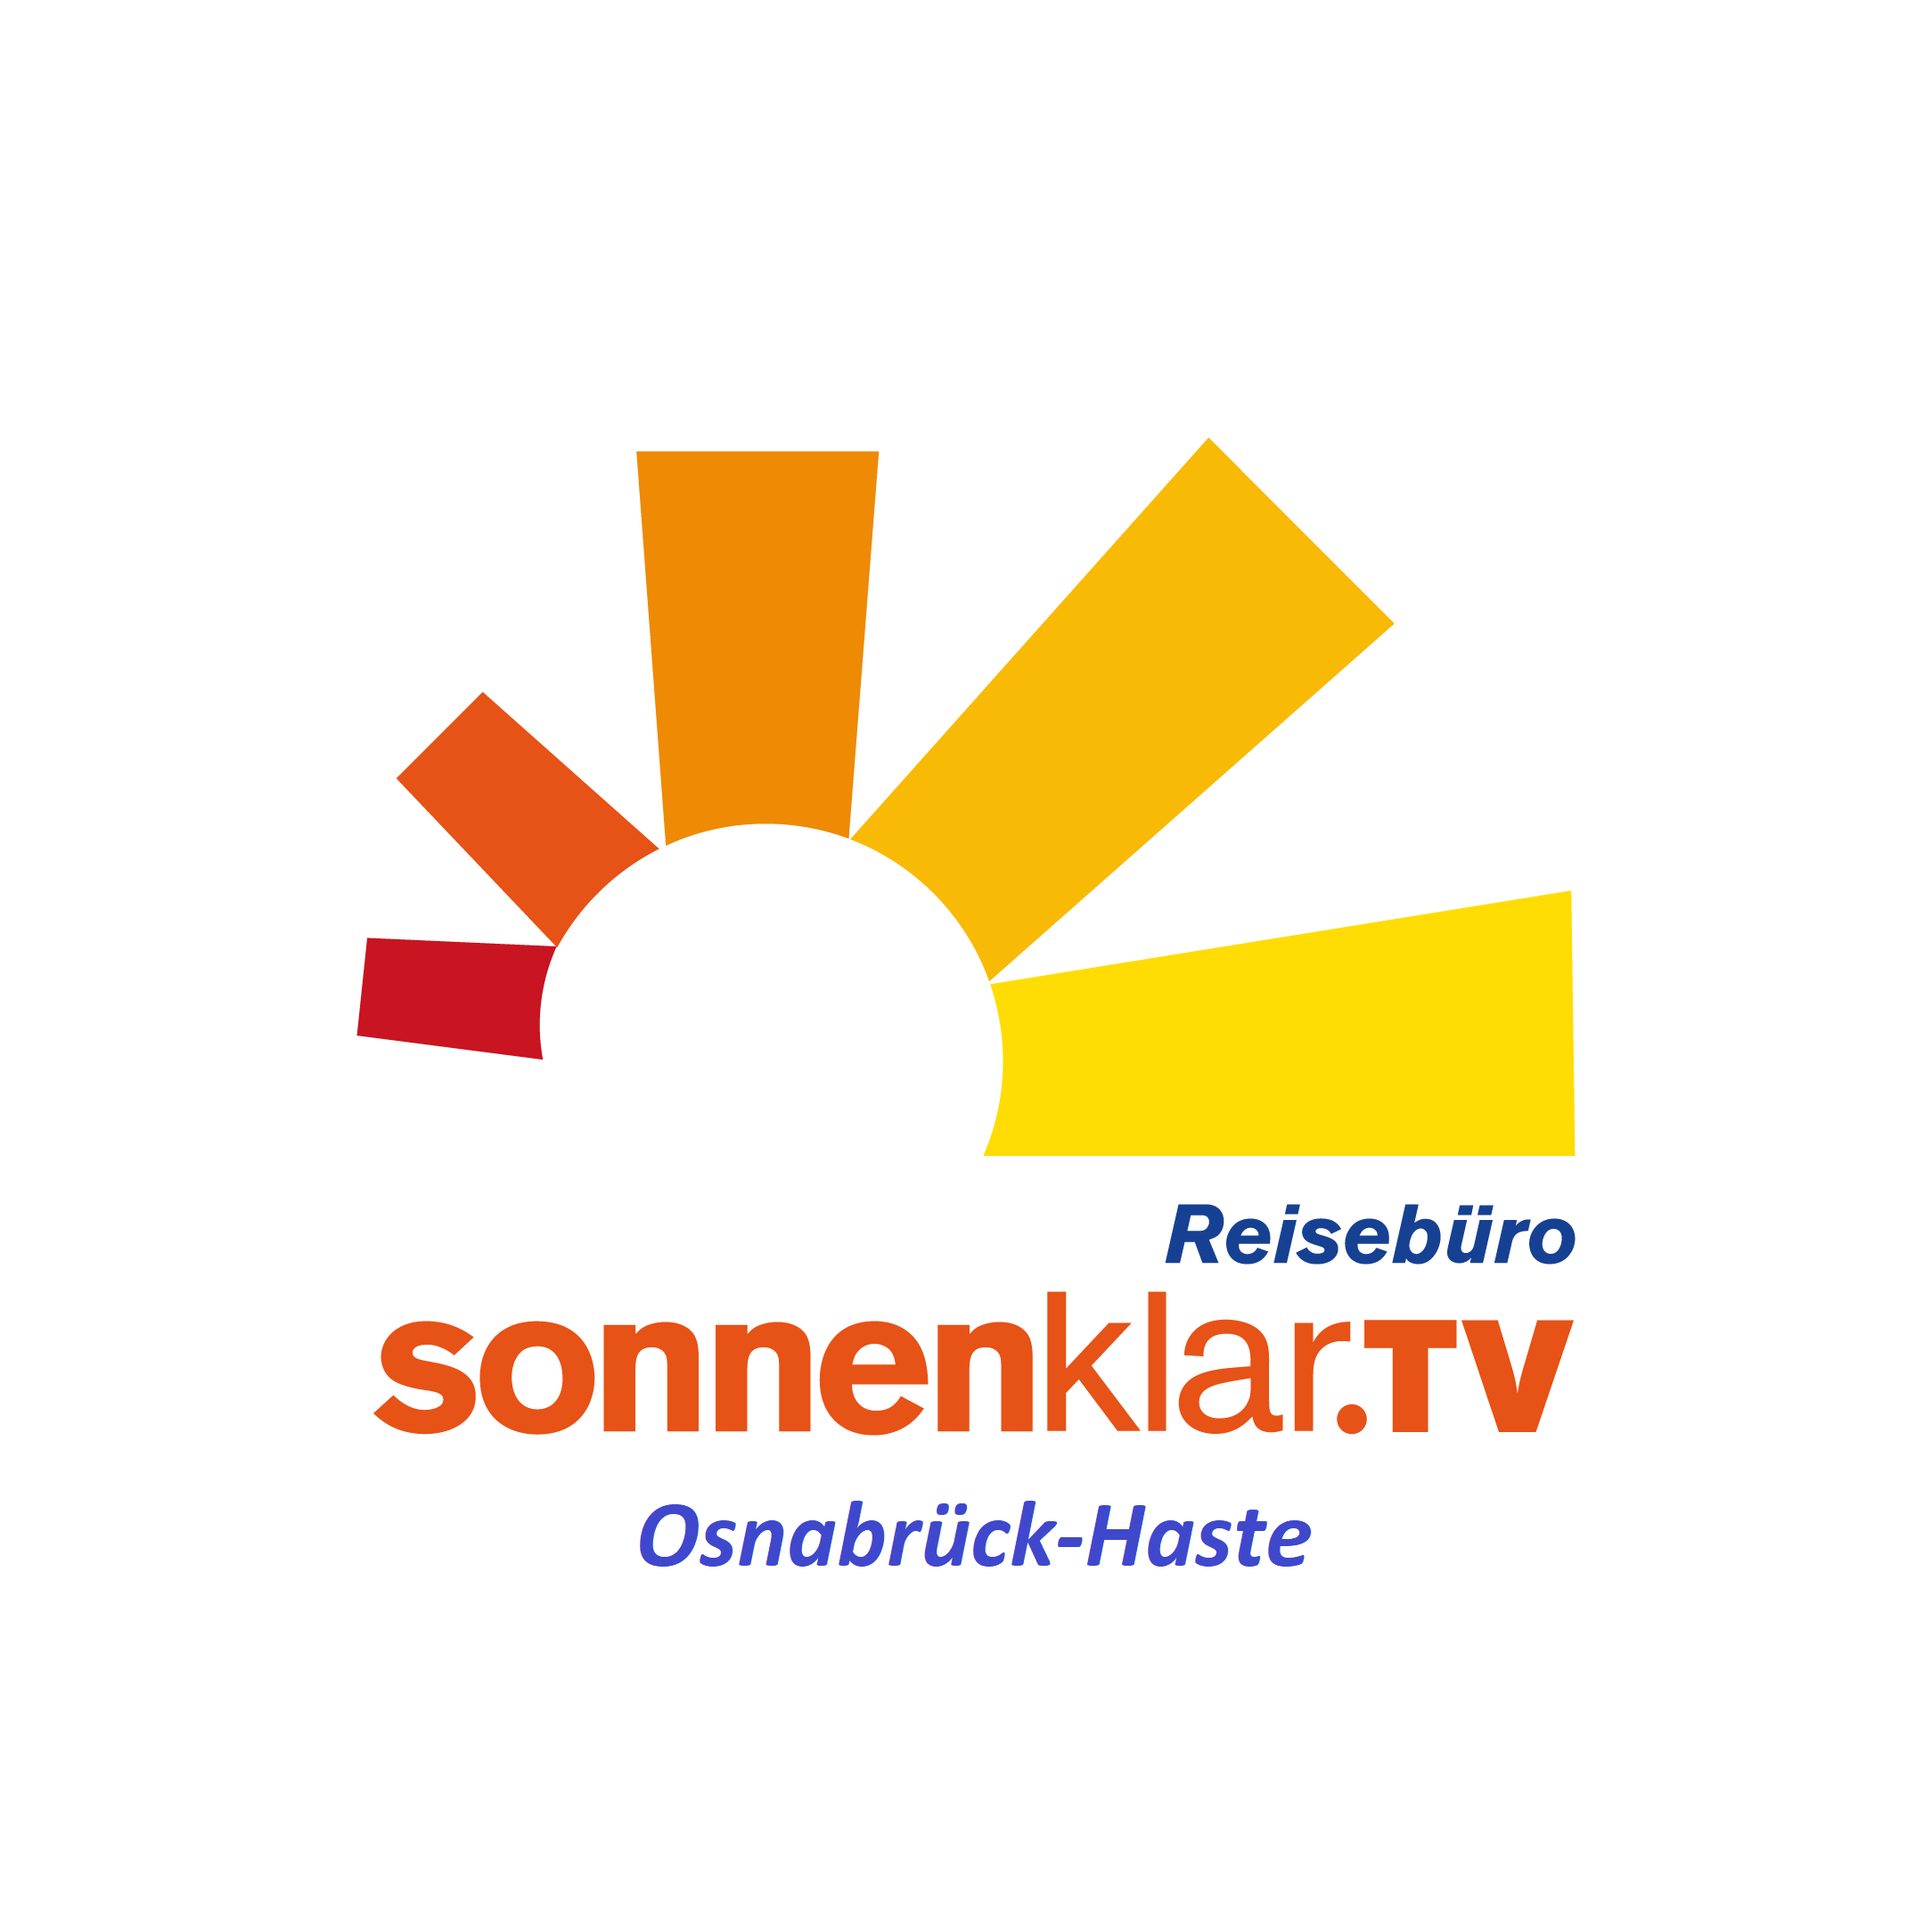 Bild 1 Sonnenklar.TV Reisebüro Osnabrück-Haste in Osnabrück